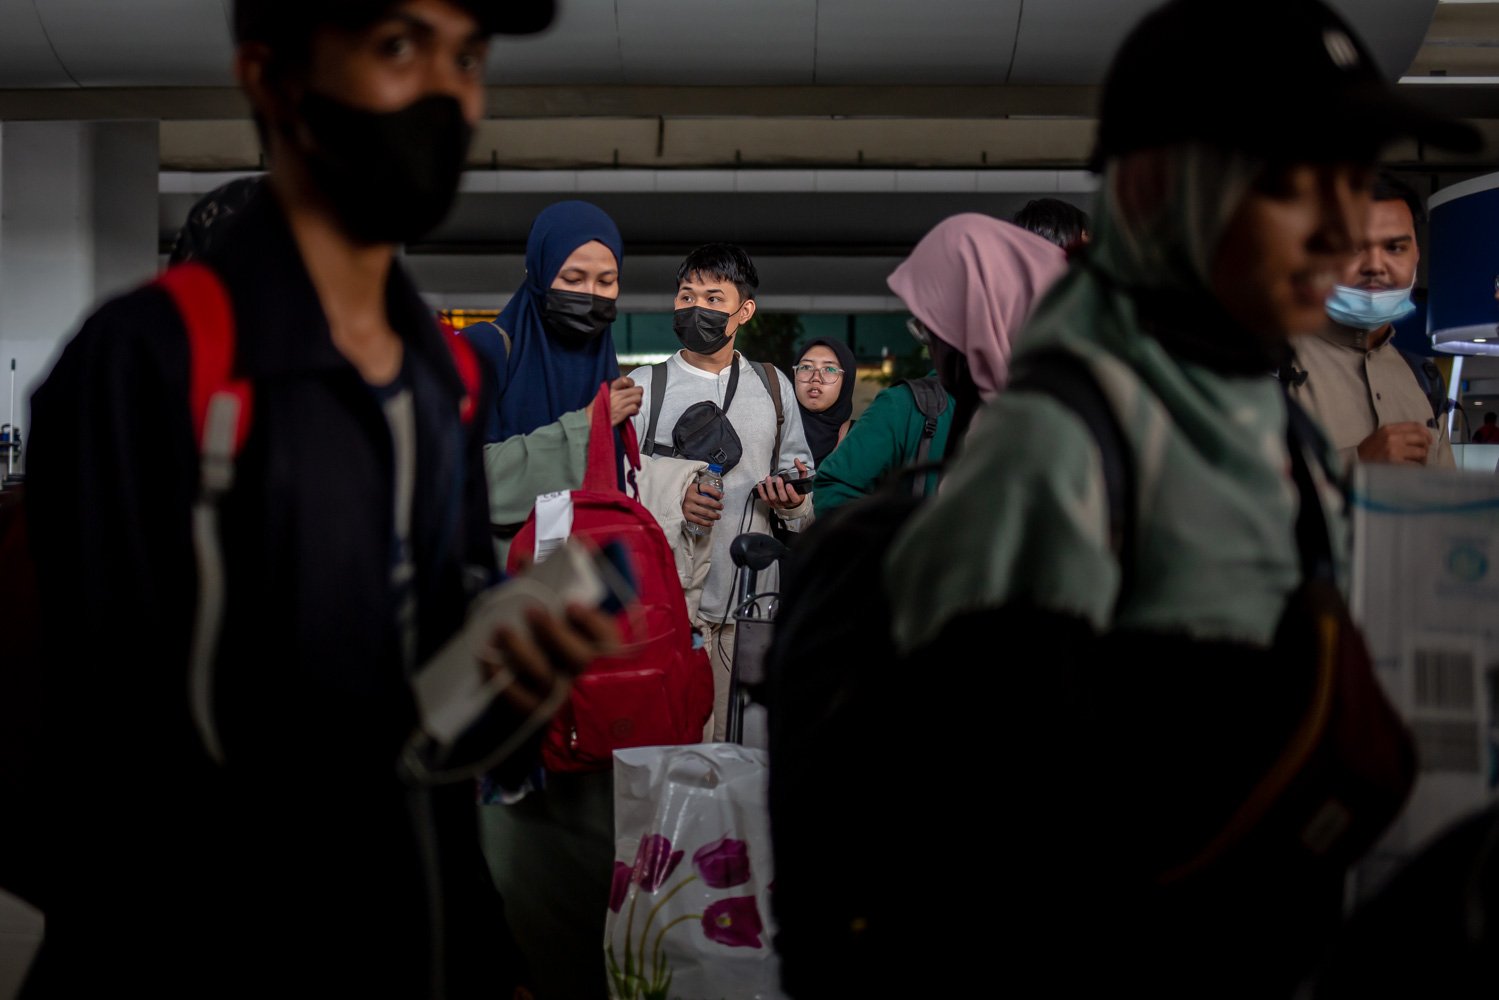 Sejumlah warga negara Indonesia (WNI) asal Sudan tiba di Bandara Soekarno Hatta, Jumat (28/4). Sebanyak 385 WNI dievakuasi akibat konflik bersenjata yang terjadi di Sudan terdiri dari 248 perempuan, 137 laki-laki, dan 43 anakanak. Sebagian besar adalah mahasiswa Indonesia, pekerja migran Indonesia, karyawan perusahaan dan staf KBRI.